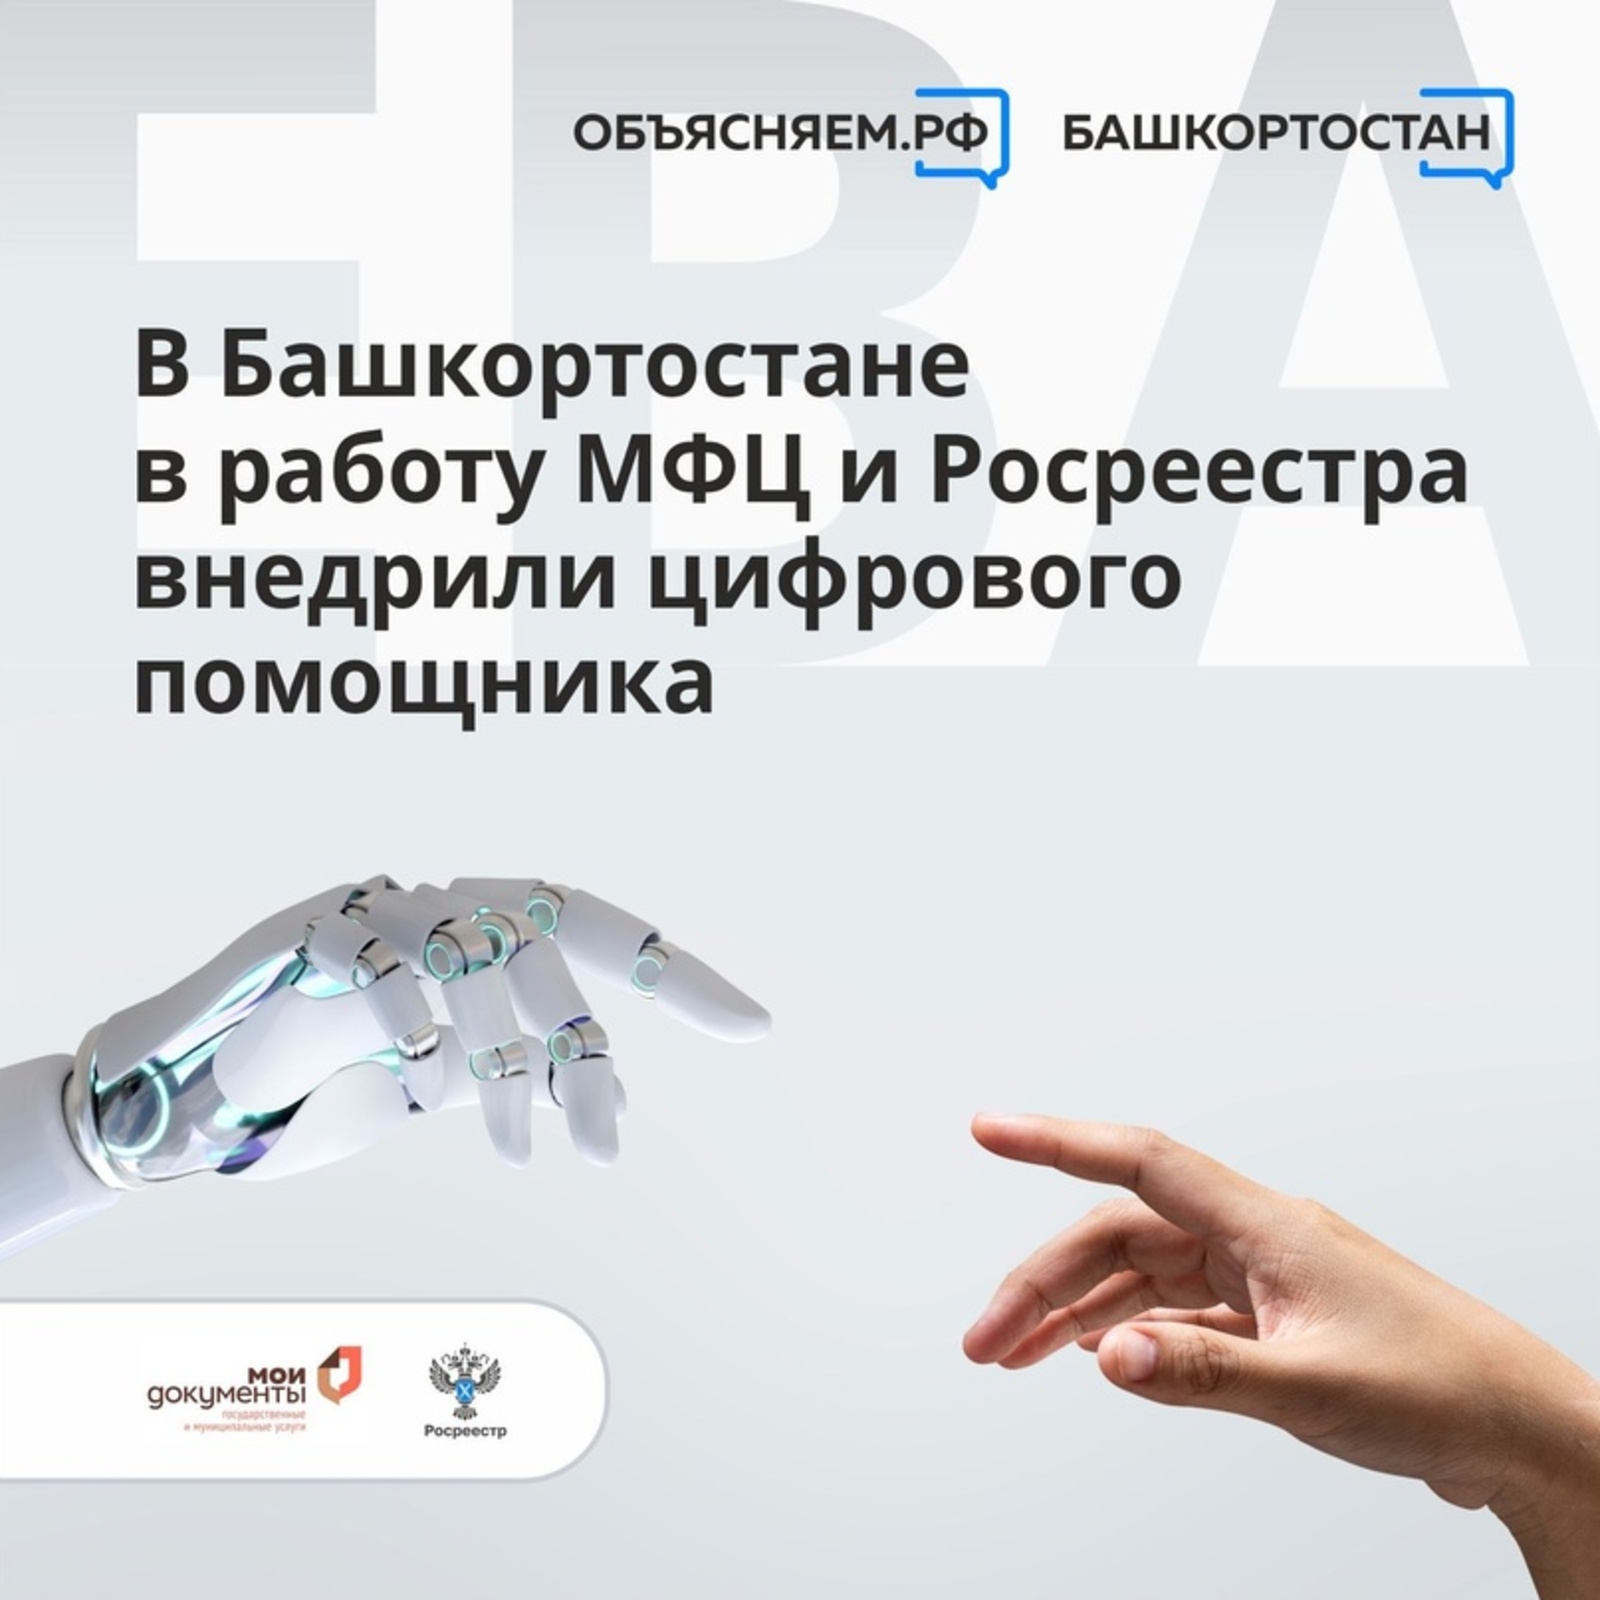 Башкортостан вошел в число пилотных регионов по внедрению в работу Росреестра и МФЦ цифрового помощника «ЕВА»